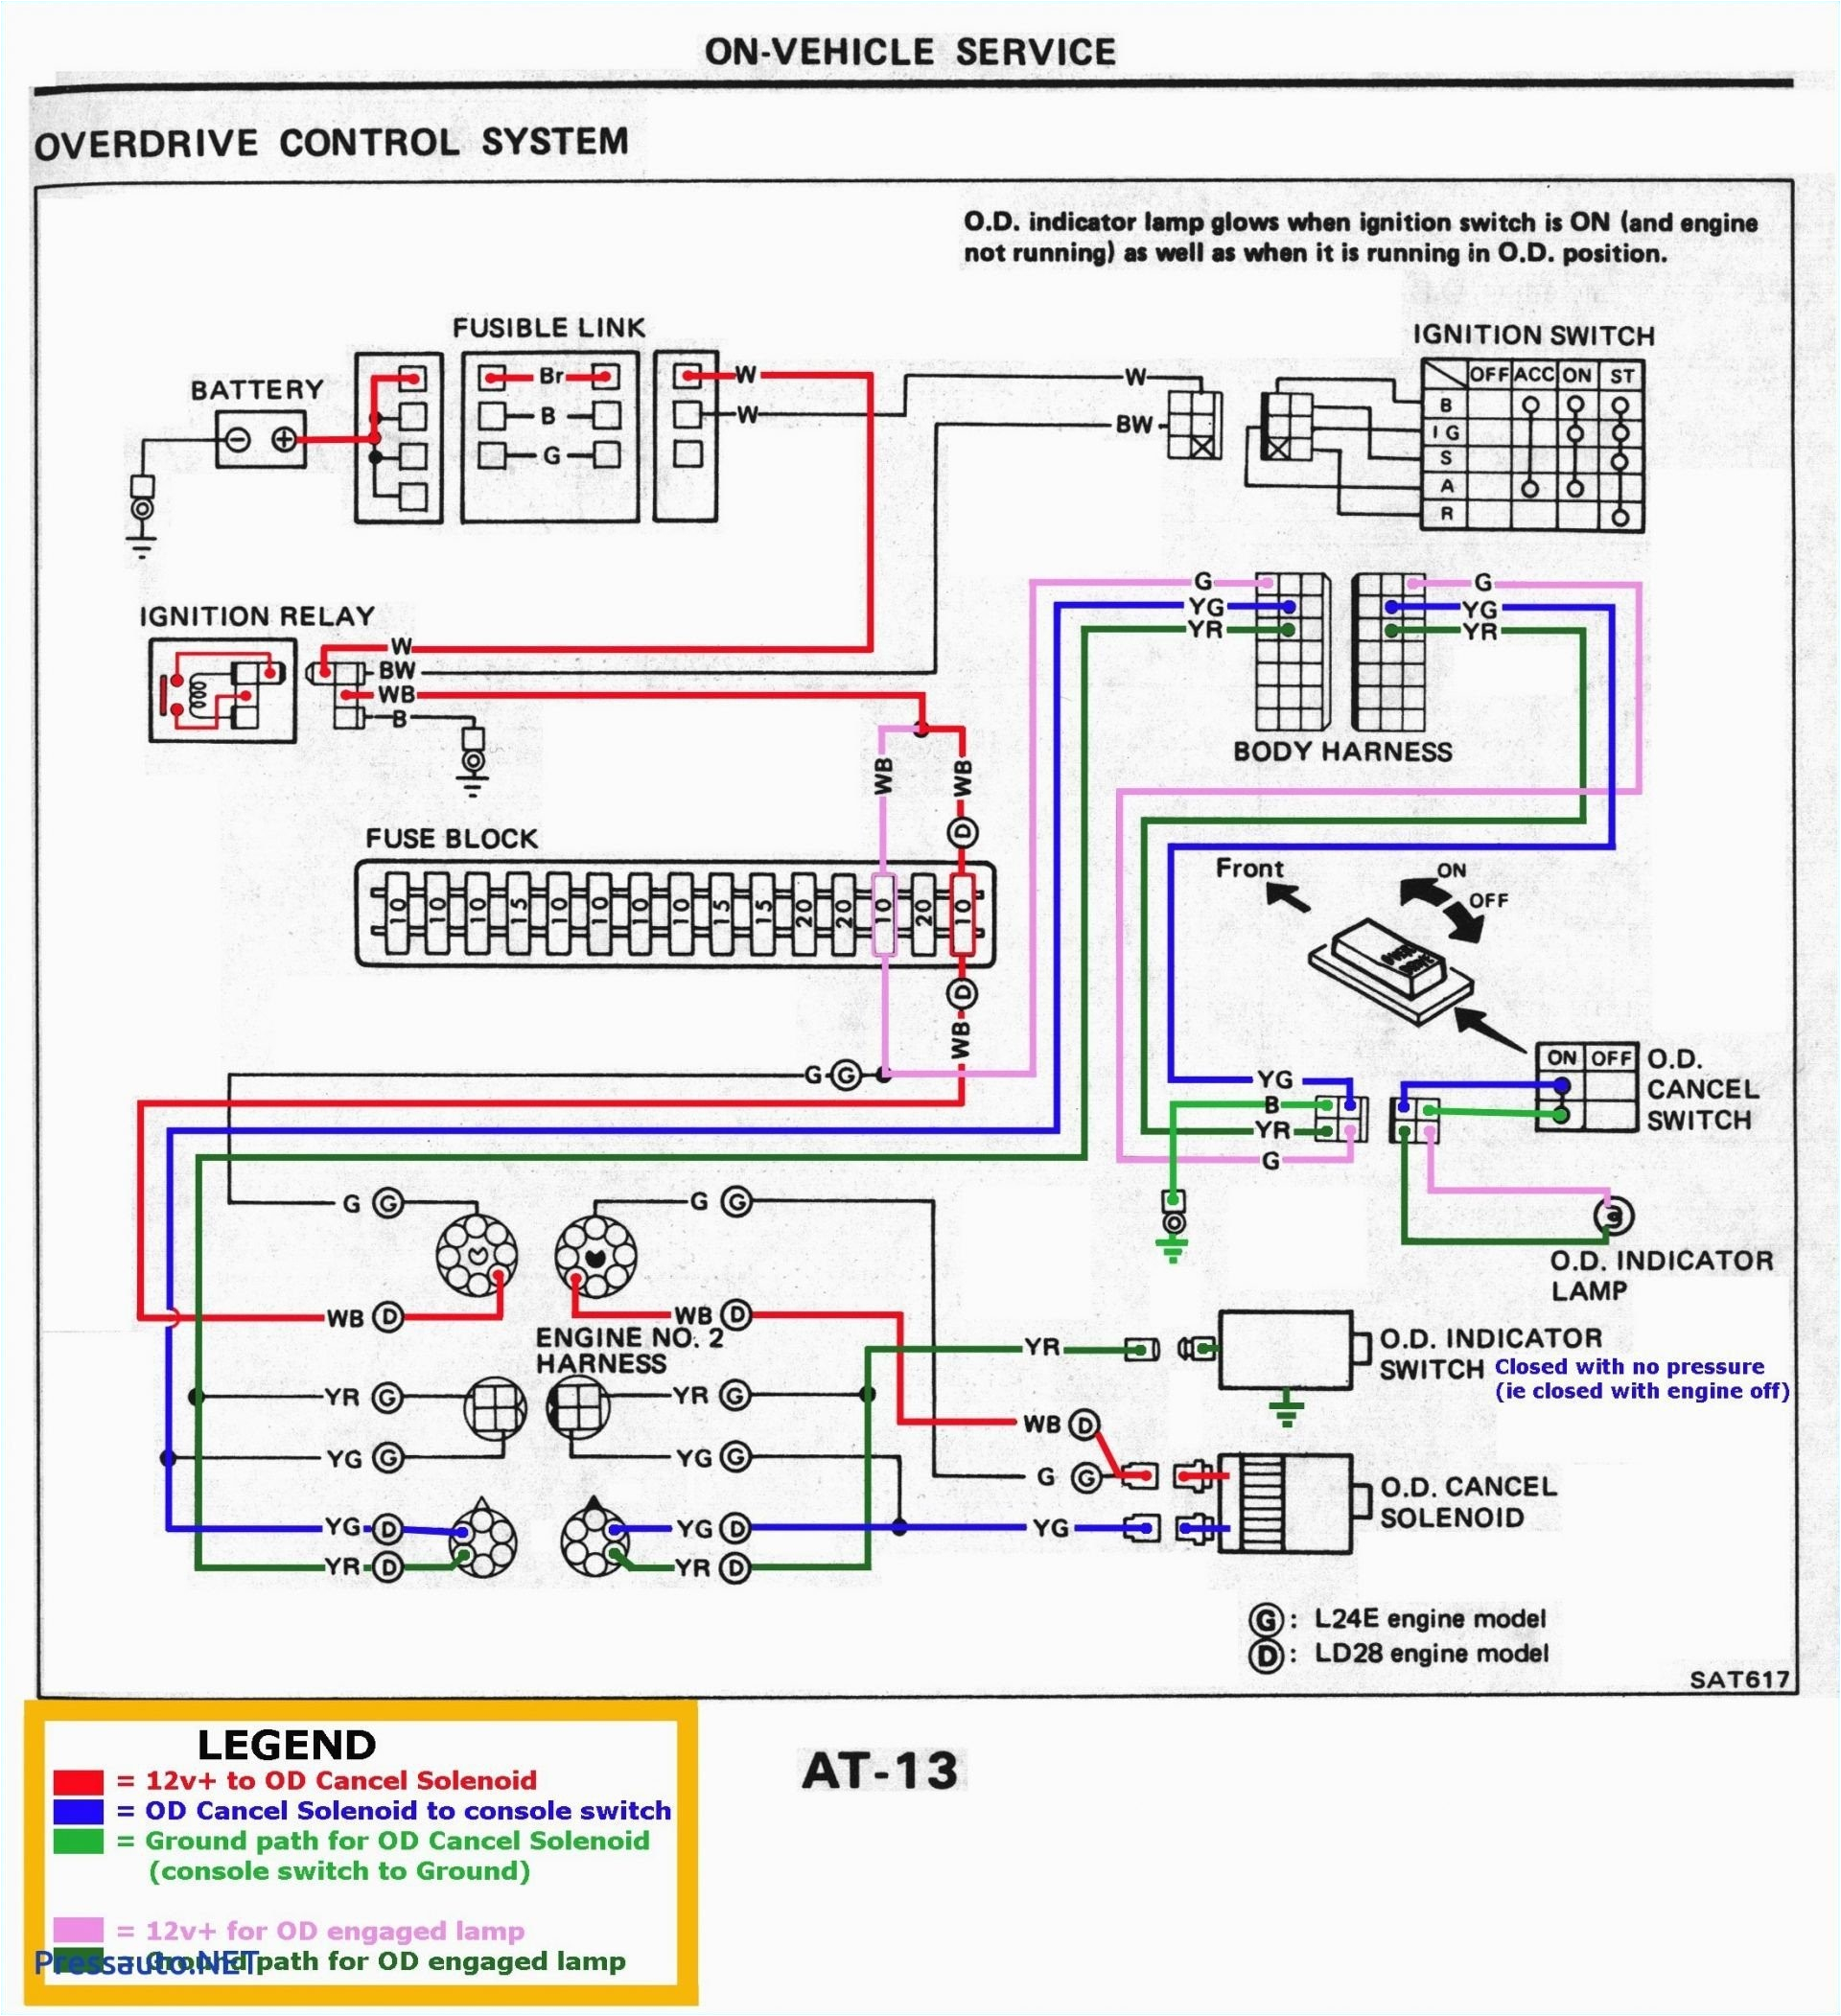 wiring diagram fuel pump avanza unique wiring diagram eps honda jazz wiring diagram of wiring diagram fuel pump avanza jpg